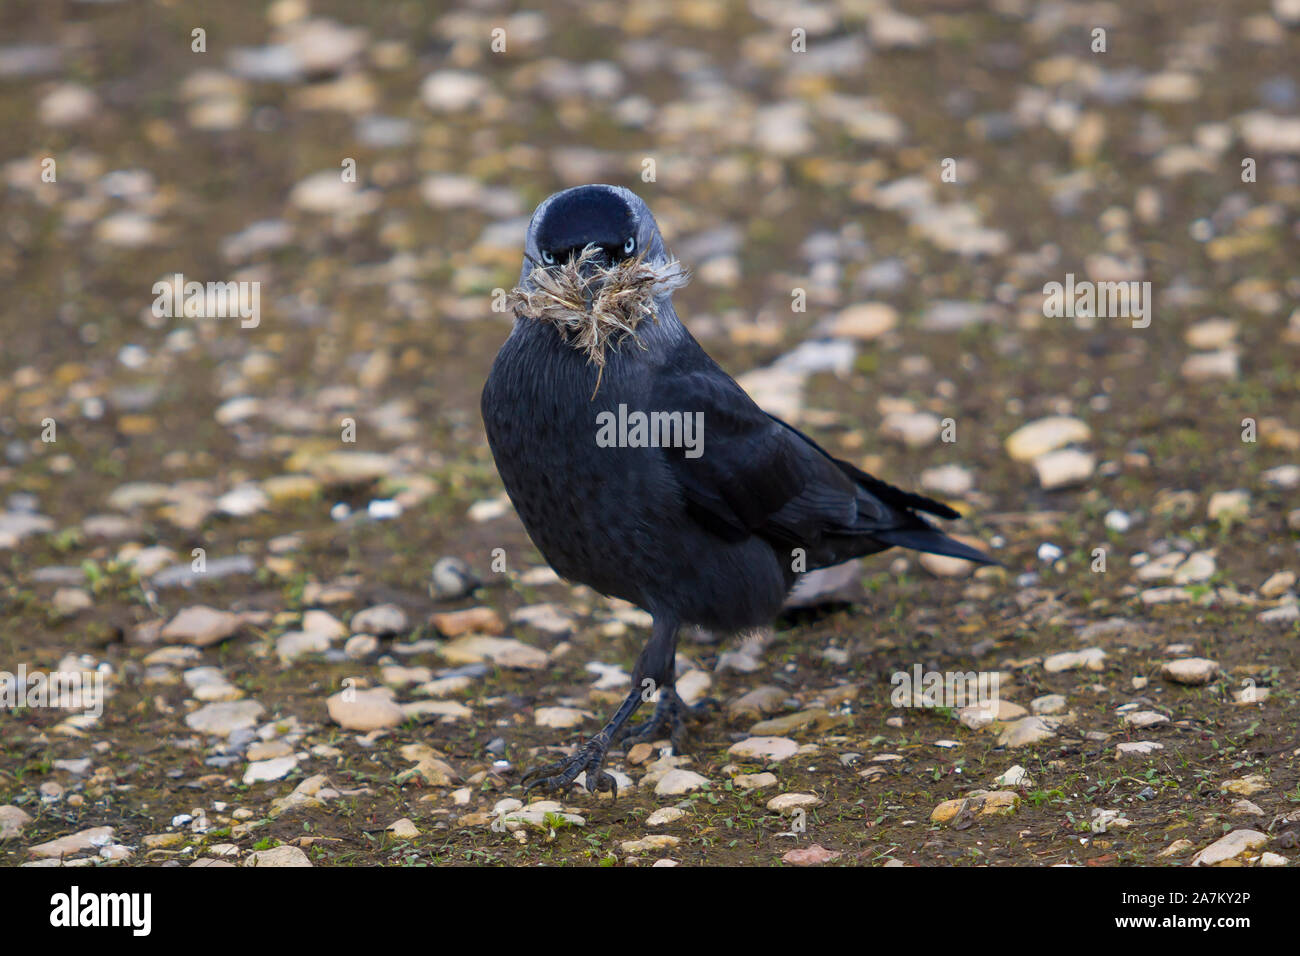 Wild UK jackdaw bird (Corvus monedula) standing isolated outdoors on ground staring, nesting material in beak. UK crows, corvids. Stock Photo